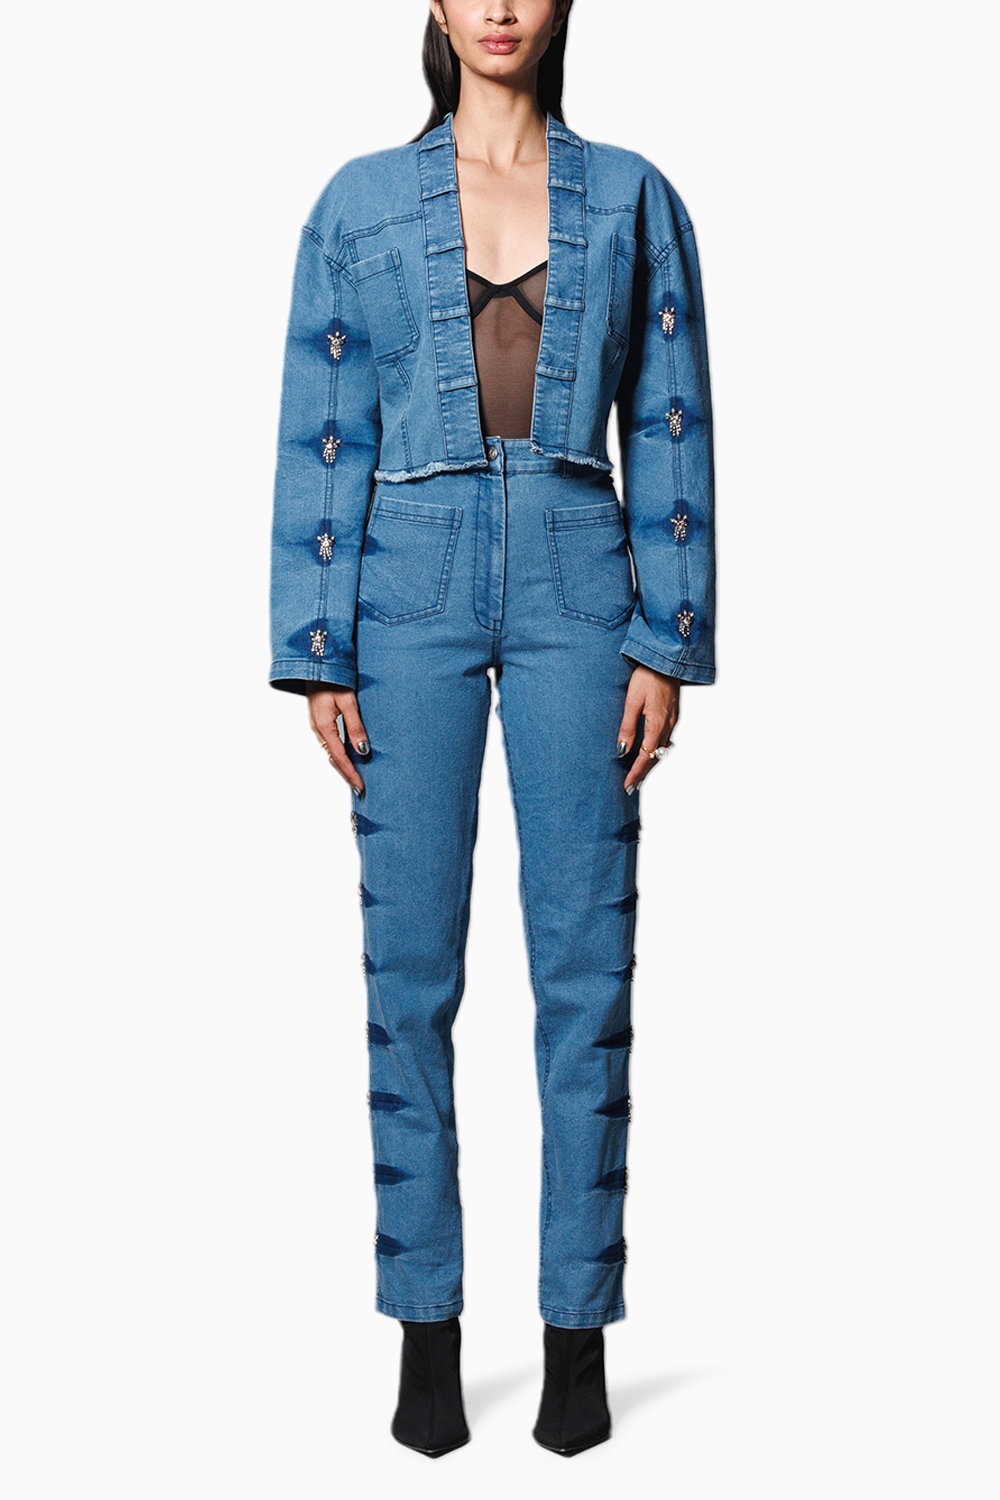 Blue Denim Embellished Crop Jacket with Pants Coord Set